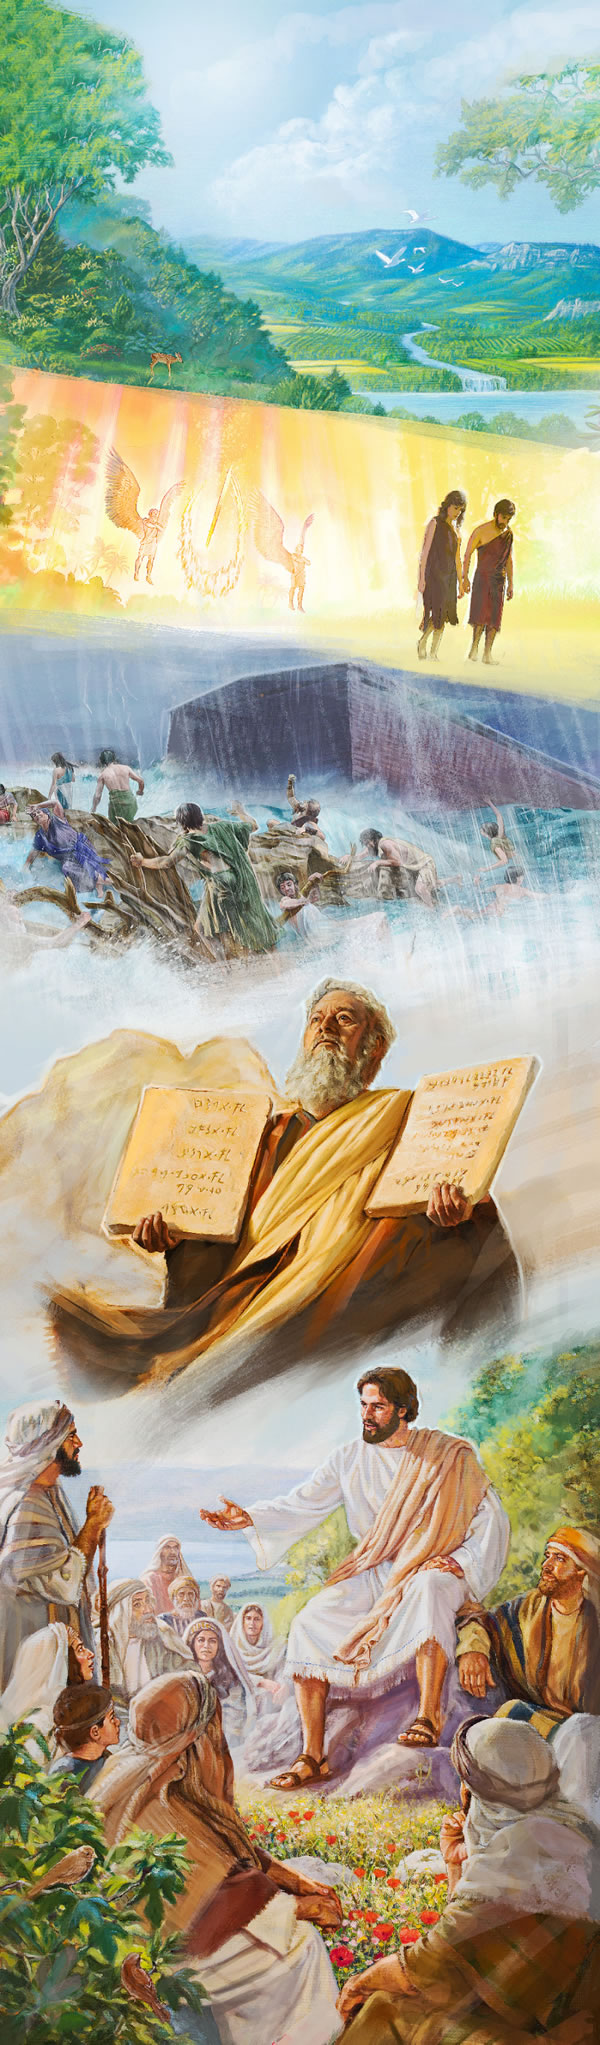 El Paraíso original, Adán y Eva echados del Paraíso, el Diluvio de los días de Noé, Moisés con los Diez Mandamientos y Jesús enseñando a otros